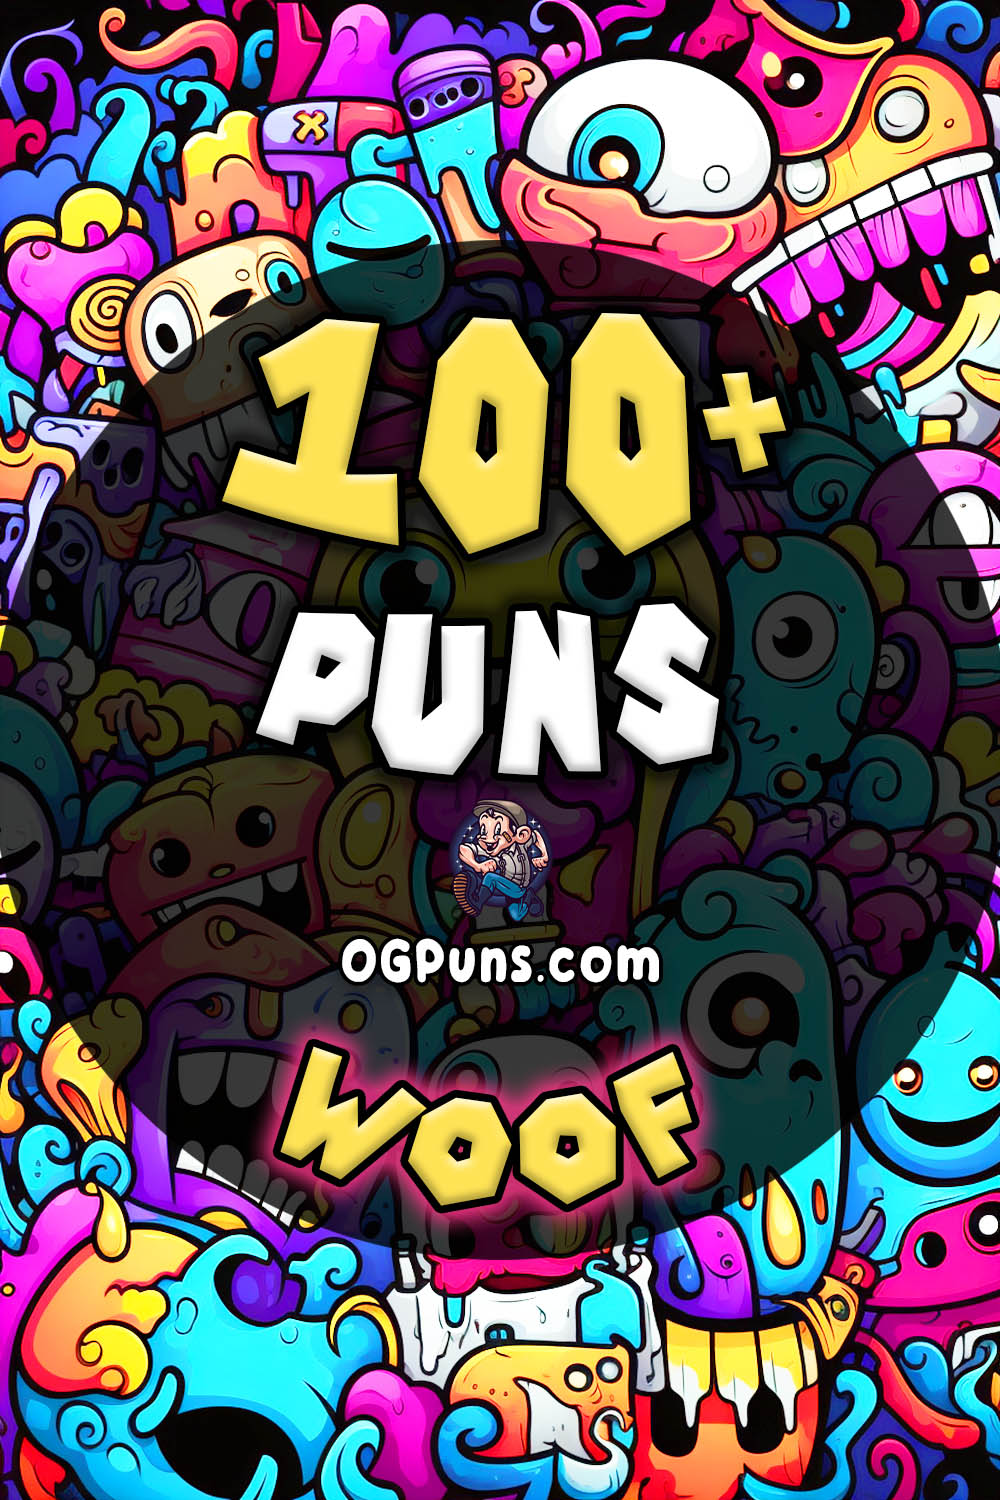 Pin a Woof puns